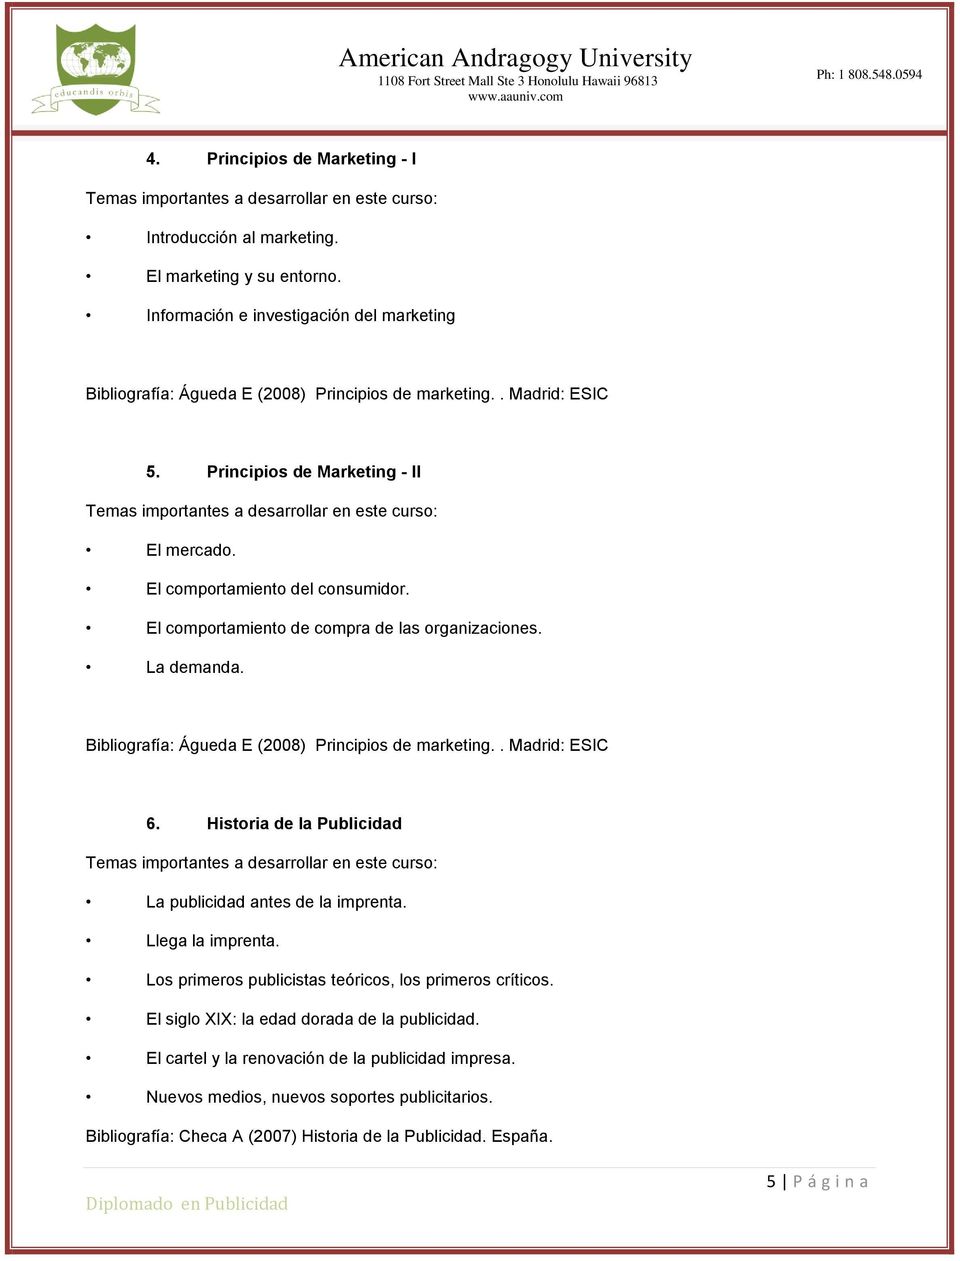 Bibliografía: Águeda E (2008) Principios de marketing.. Madrid: ESIC 6. Historia de la Publicidad La publicidad antes de la imprenta. Llega la imprenta.